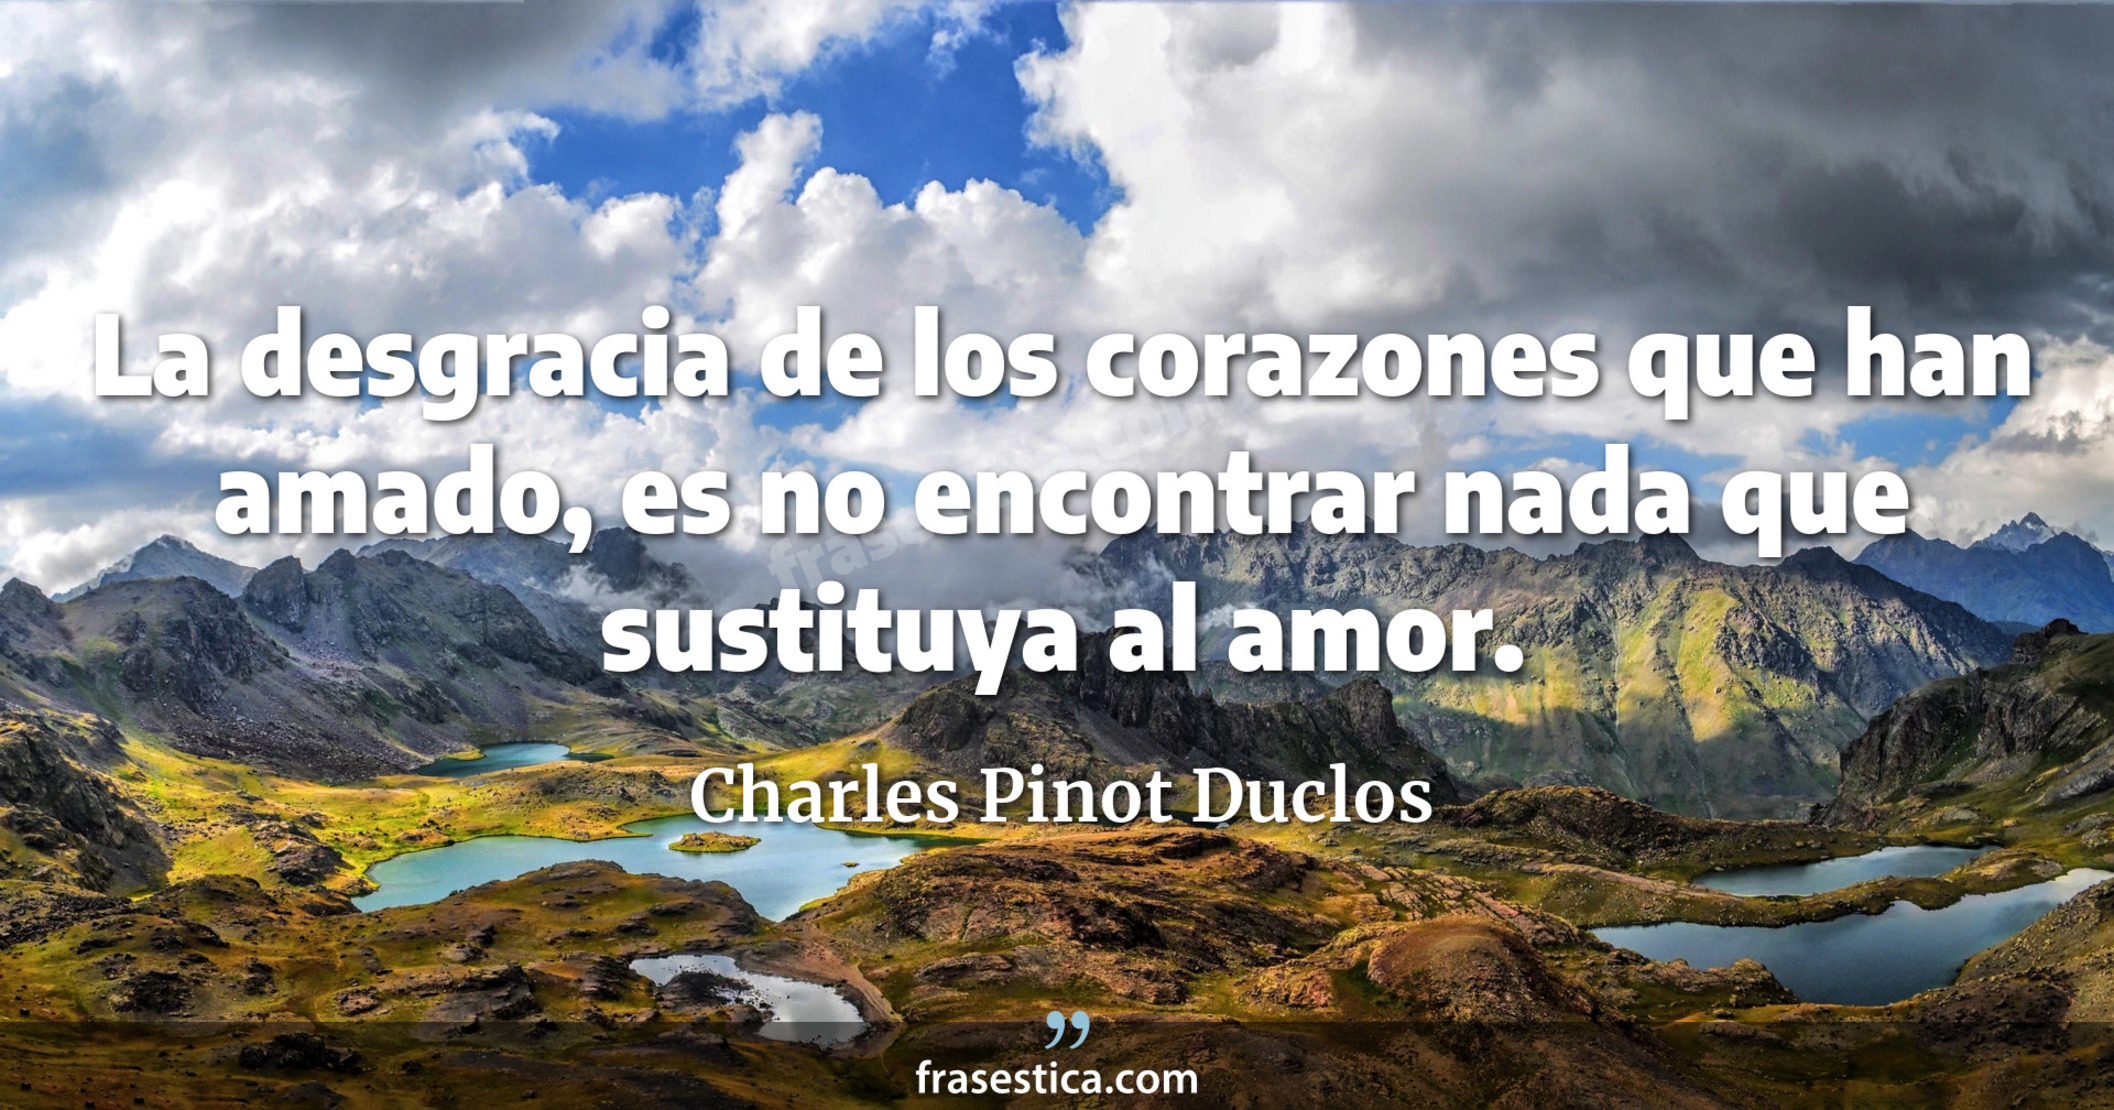 La desgracia de los corazones que han amado, es no encontrar nada que sustituya al amor. - Charles Pinot Duclos